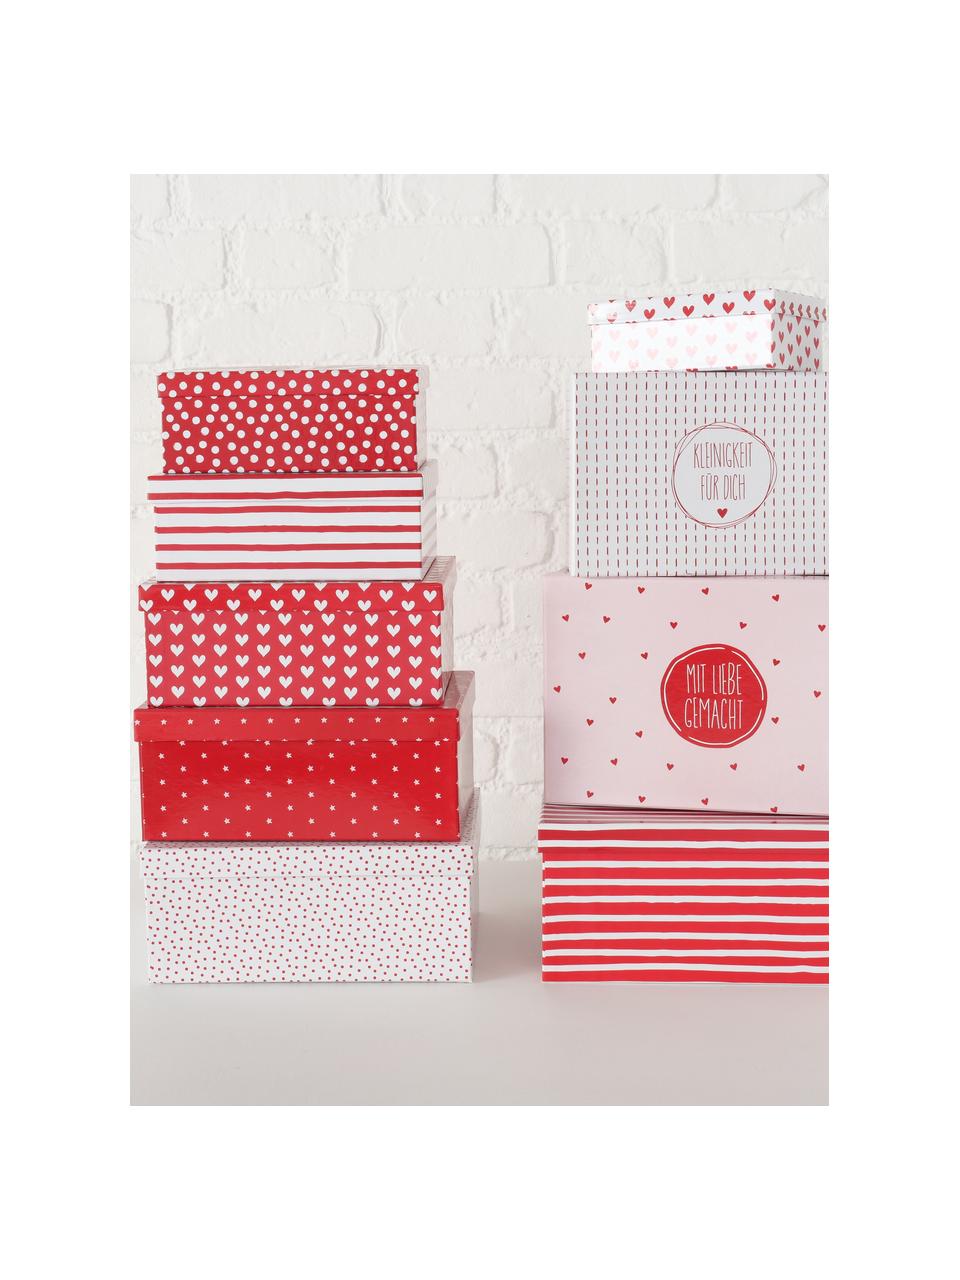 Set de cajas Illum, 9 uds., Papel, Blanco, rojo, rosa claro, Set de diferentes tamaños